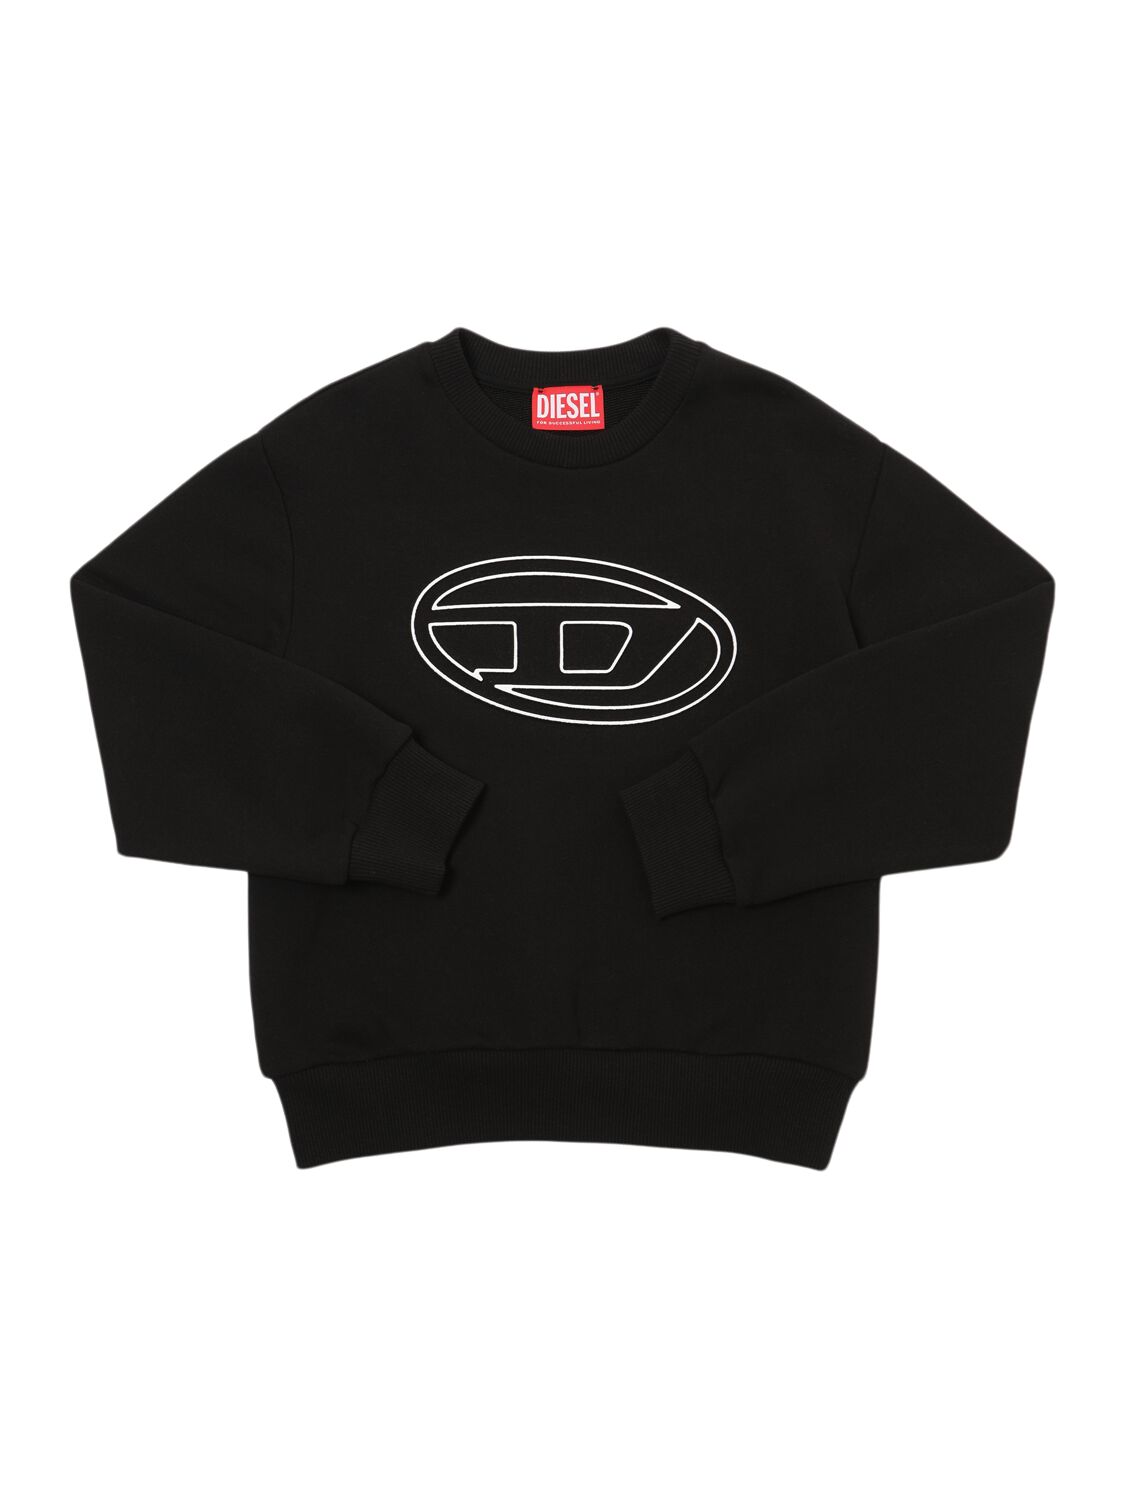 Diesel Kids' Cotton Crewneck Sweatshirt W/logo In Black